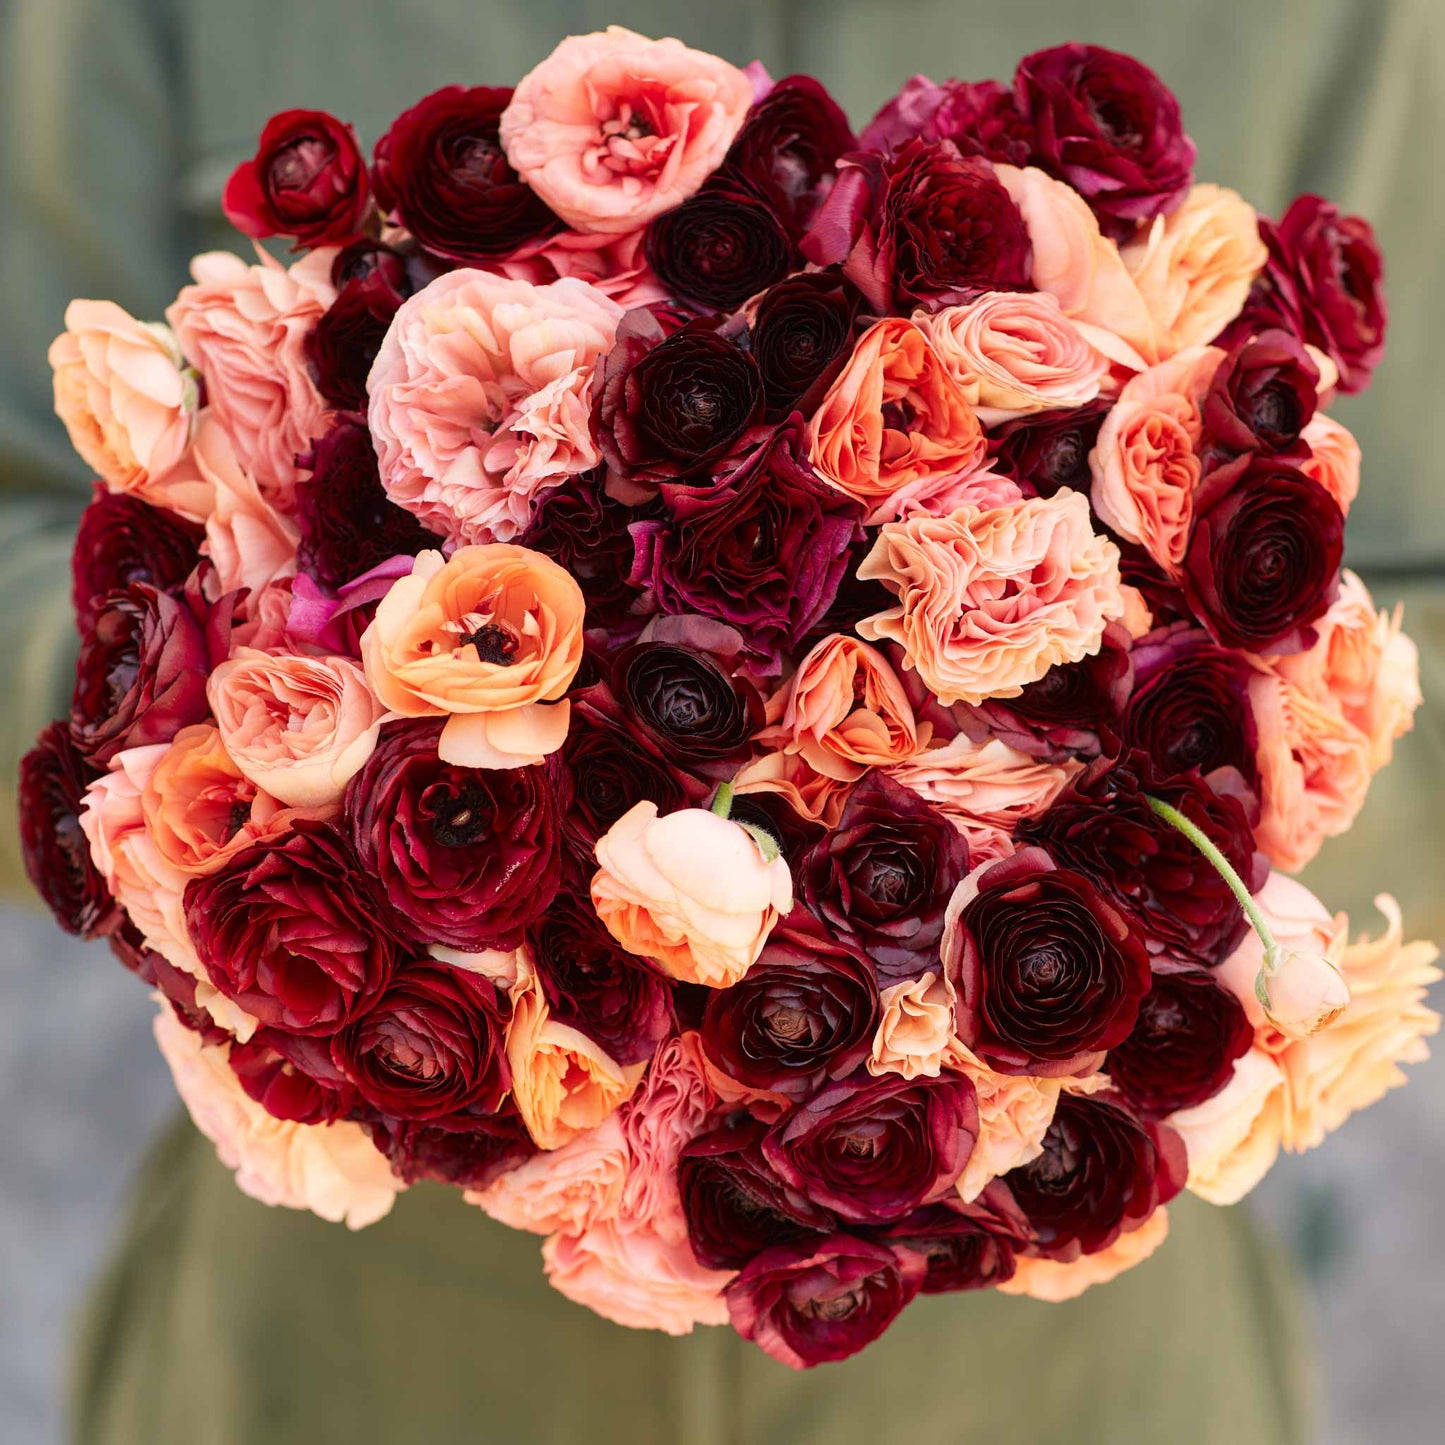 Princess Bride Mix - Ranunculus Bulbs